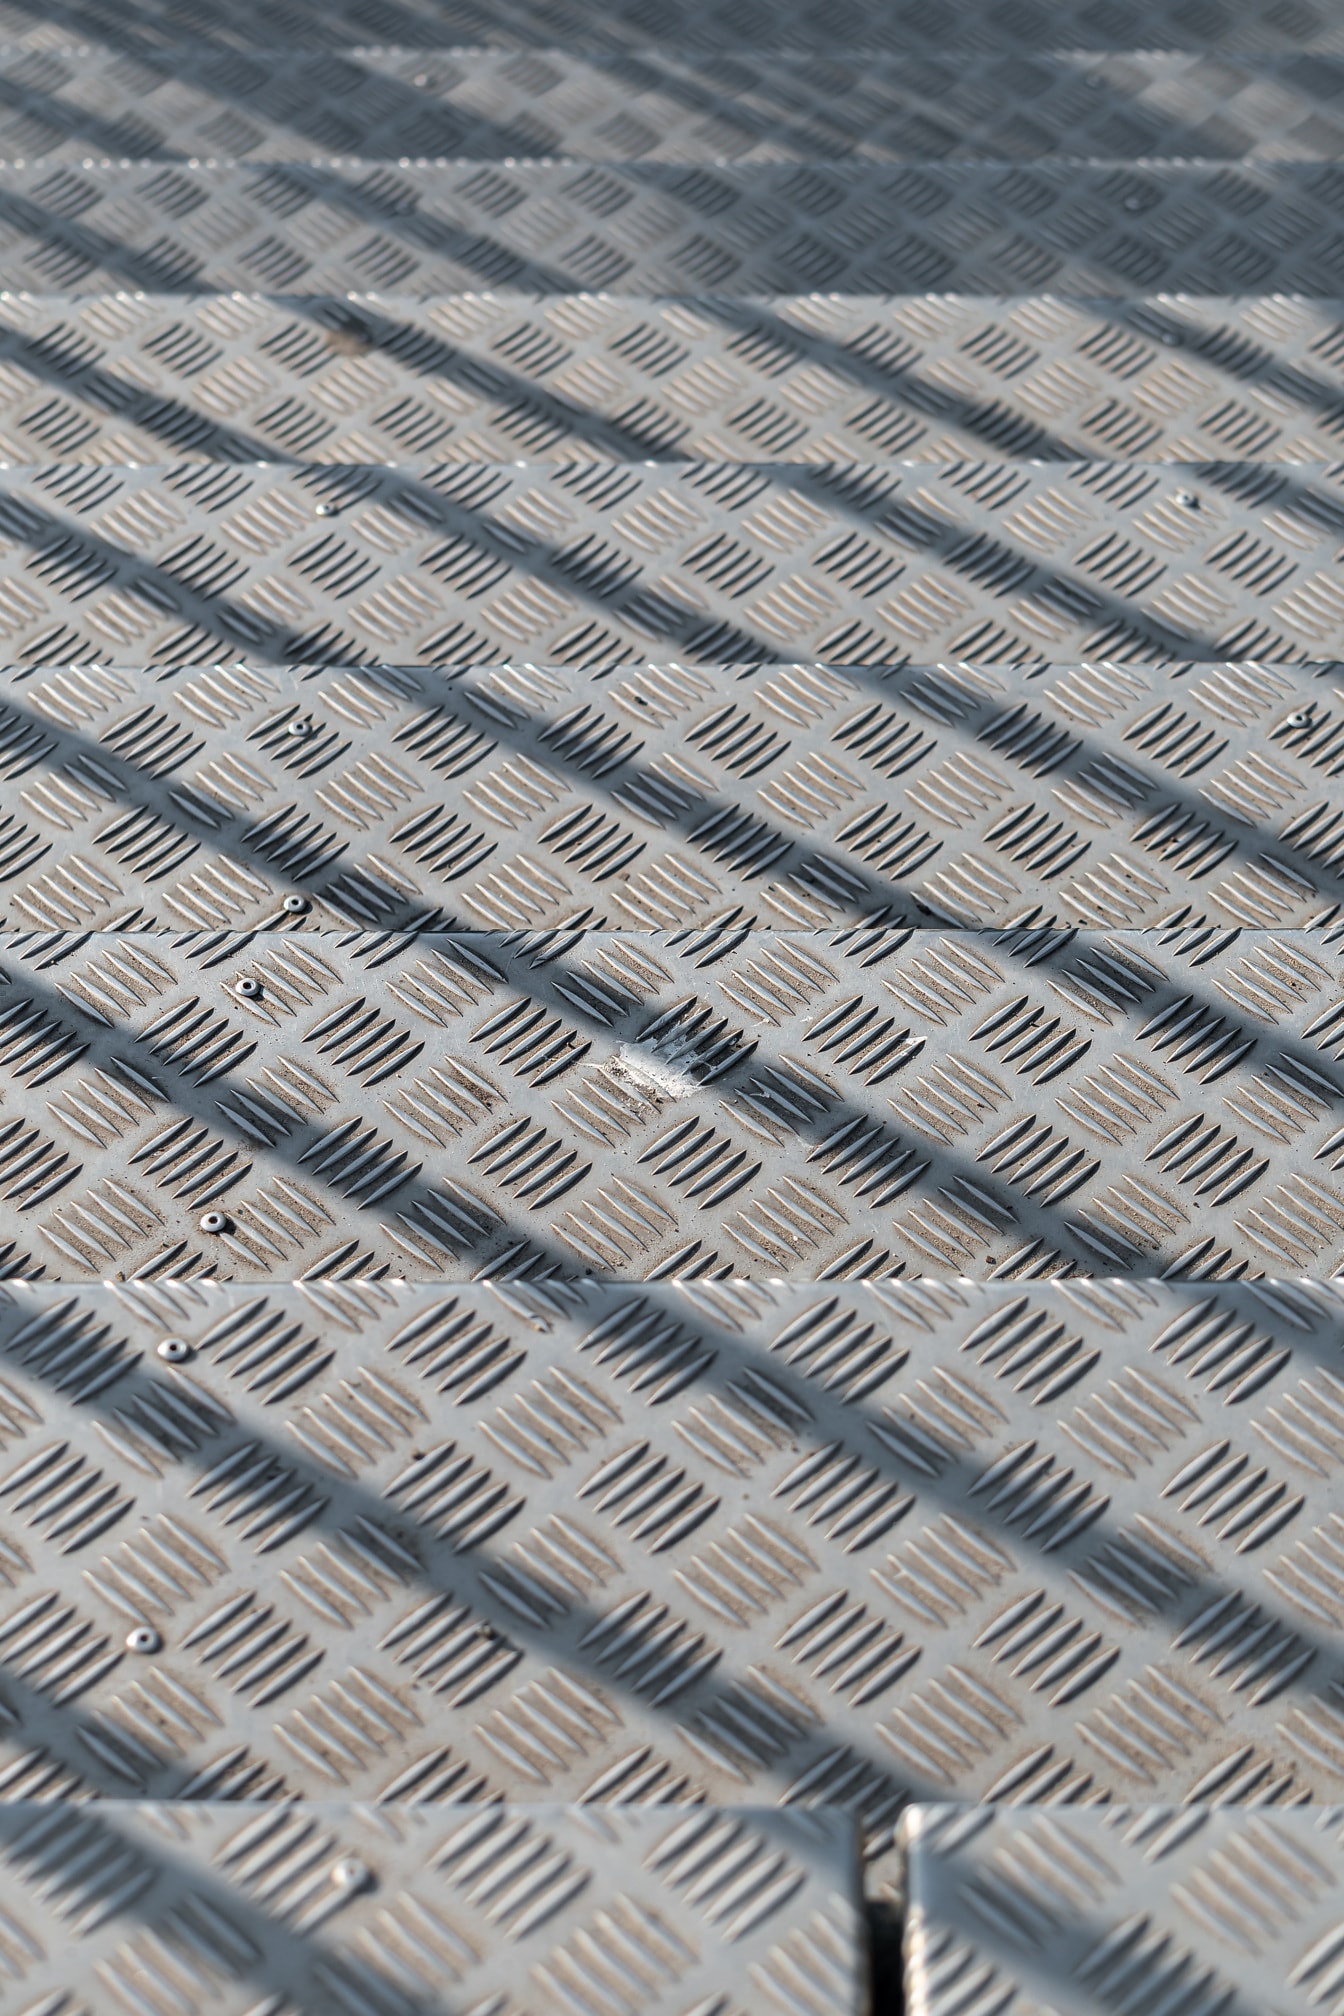 Texture close-up scale in alluminio in ombra